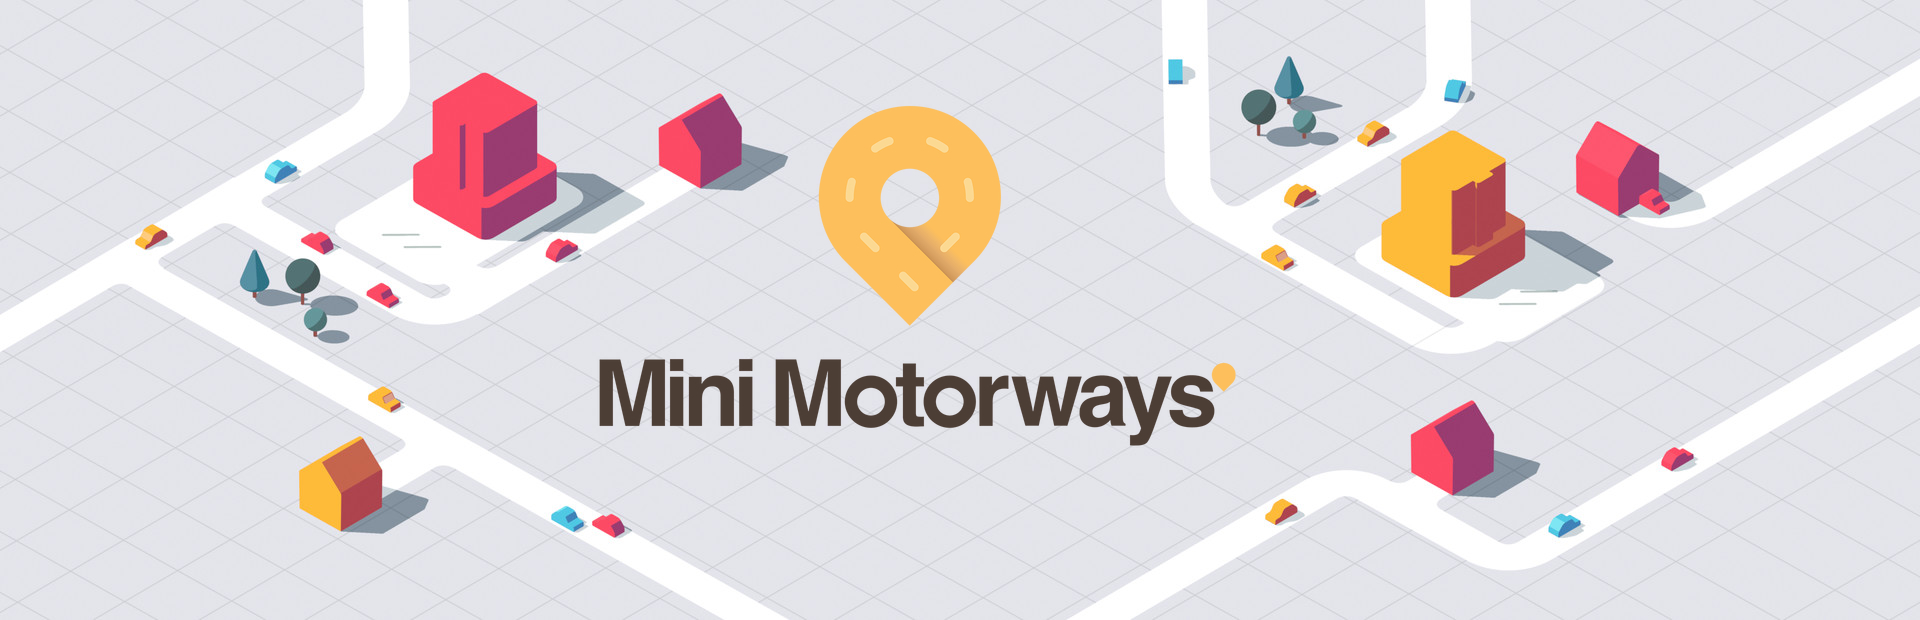 دانلود بازی Mini Motorways برای کامپیوتر | گیمباتو